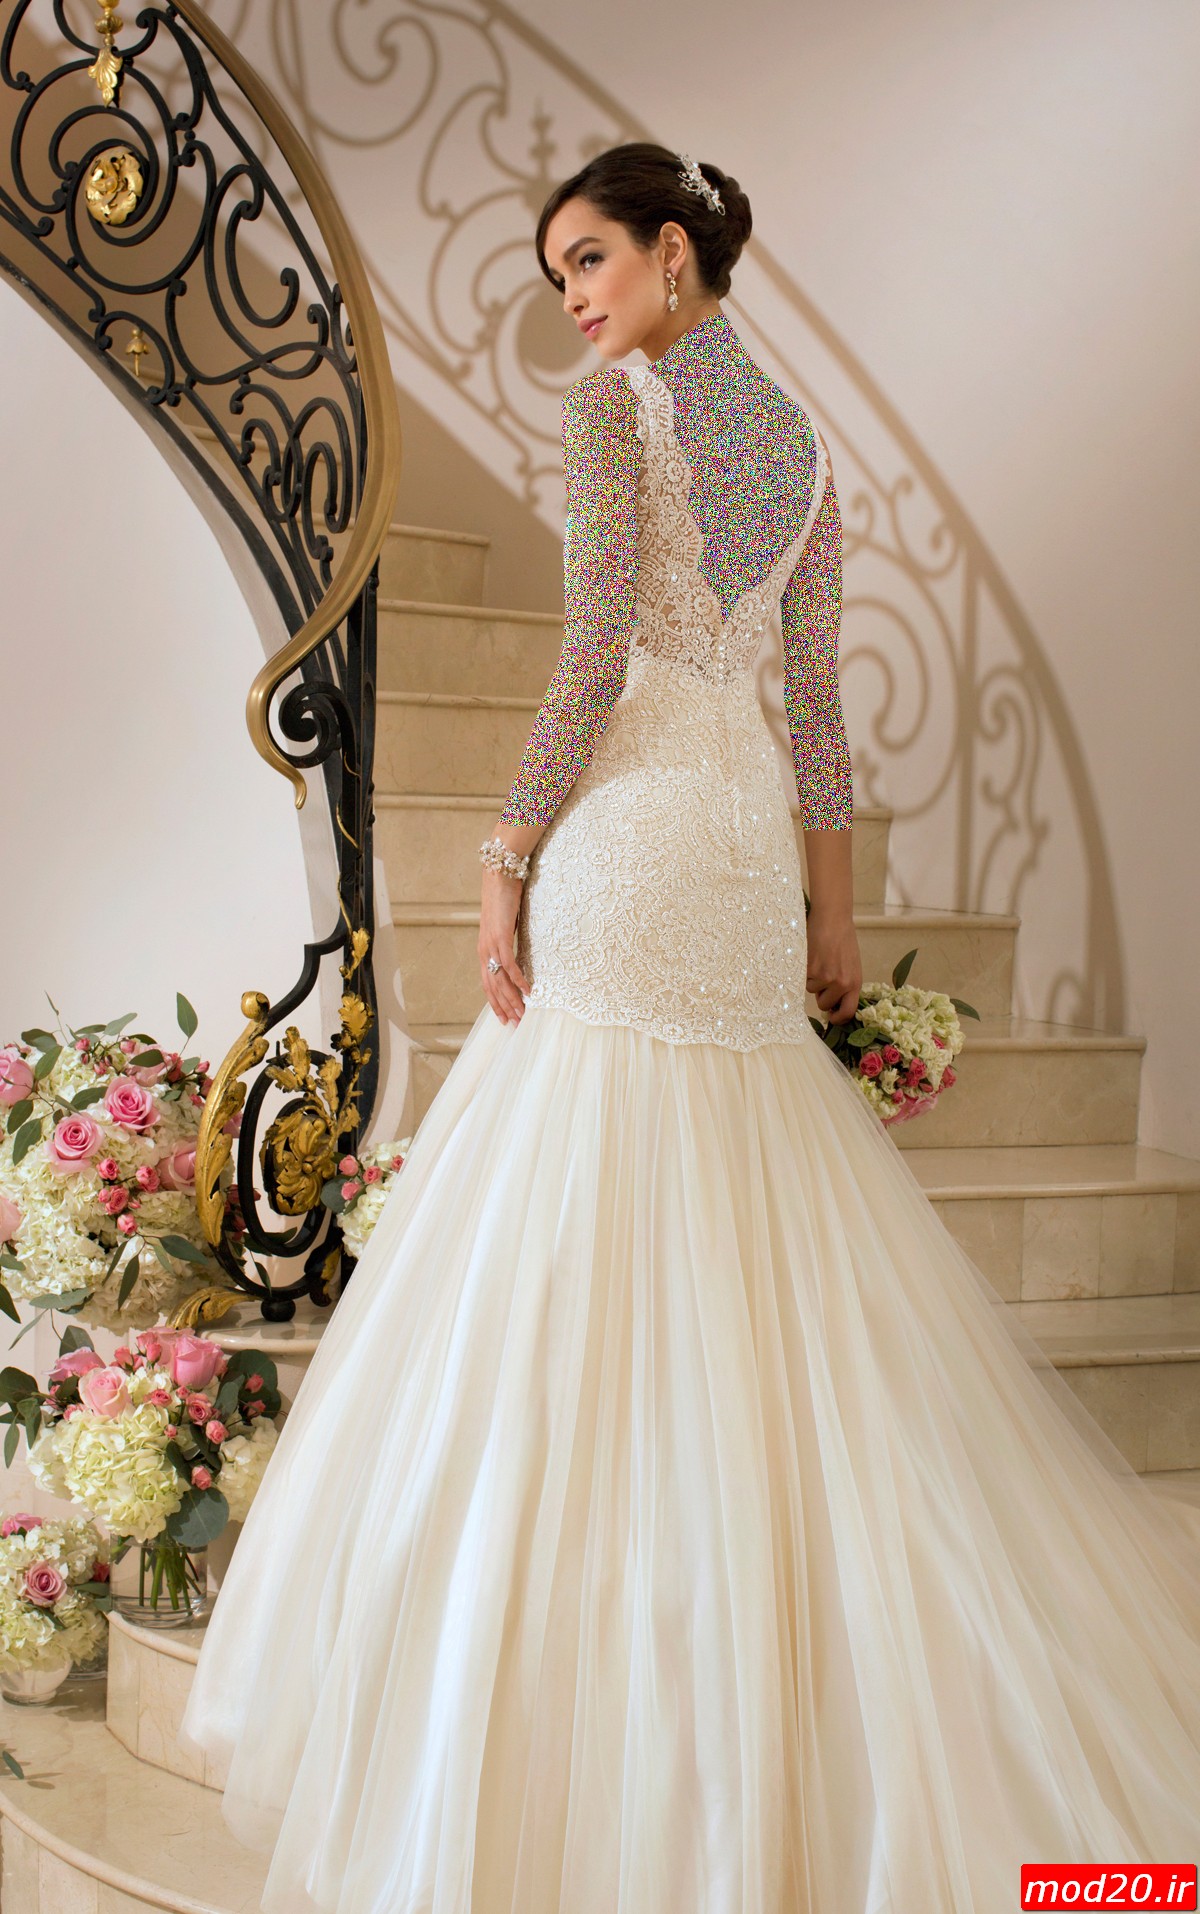 عکس مدل لباس عروس های زیبا و جدید سال 95 و بهترین لباس عروس مزون عروس لباس عروس خارجی2016